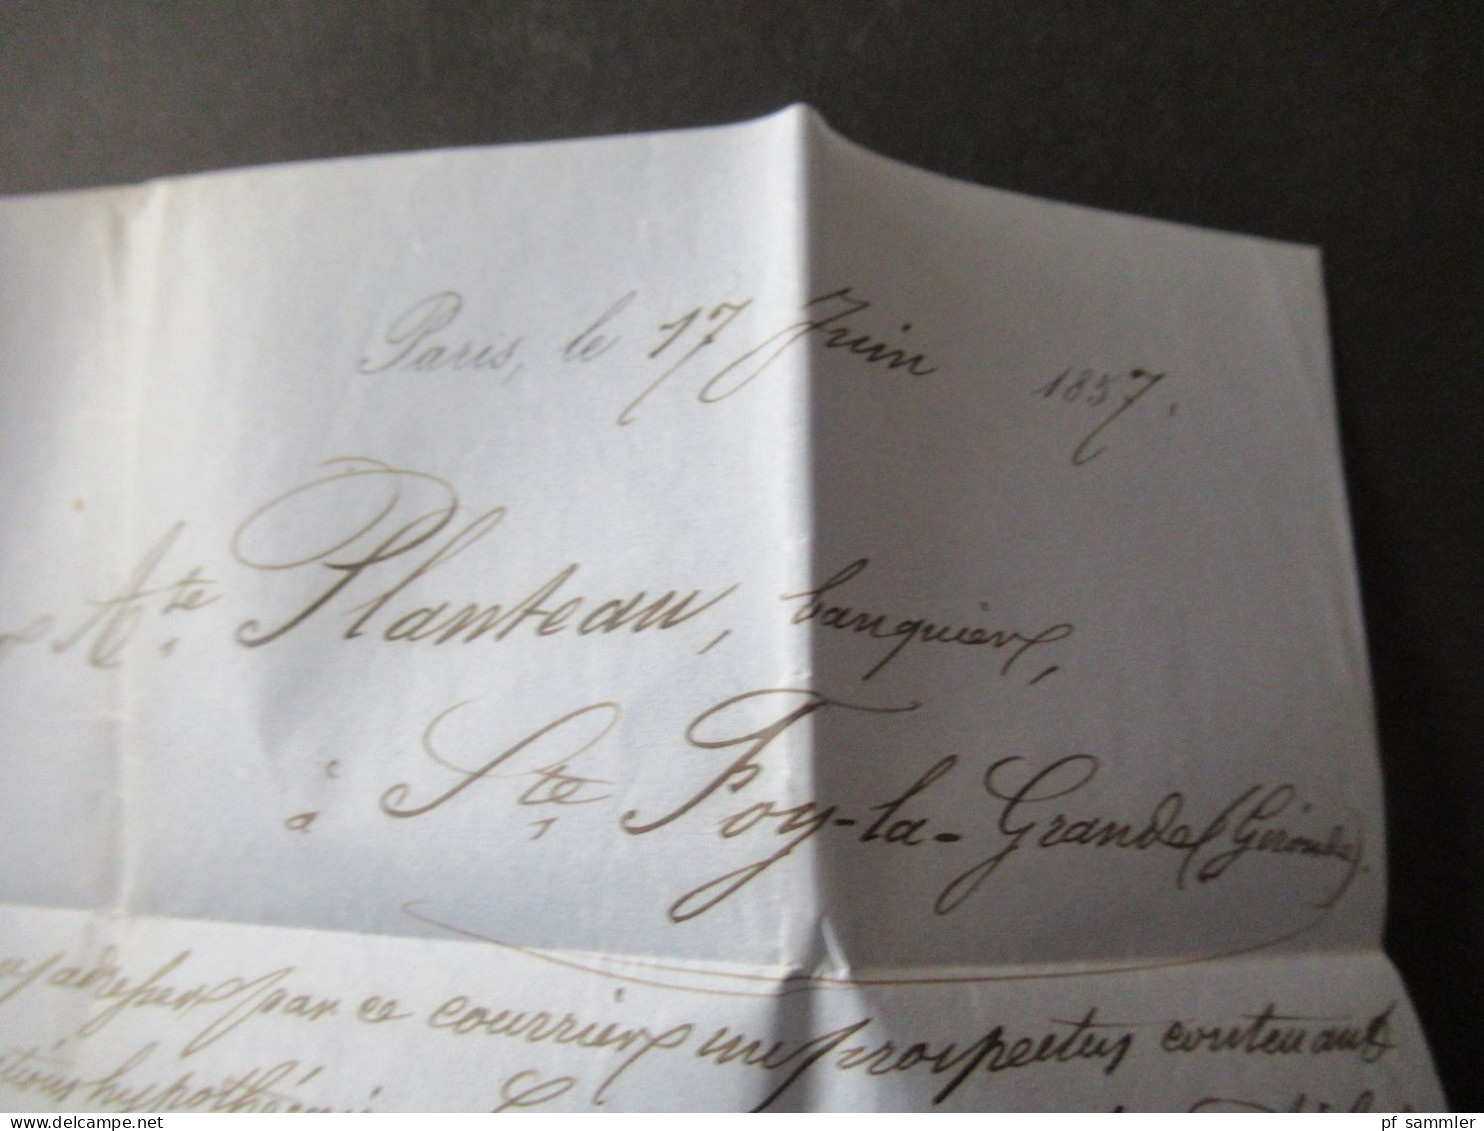 Frankreich 1857 Napoleon III. Mi.Nr.13 Faltbrief mit Inhalt / gedruckter Briefkopf Compagnie du Chemin de Fer De Galvest